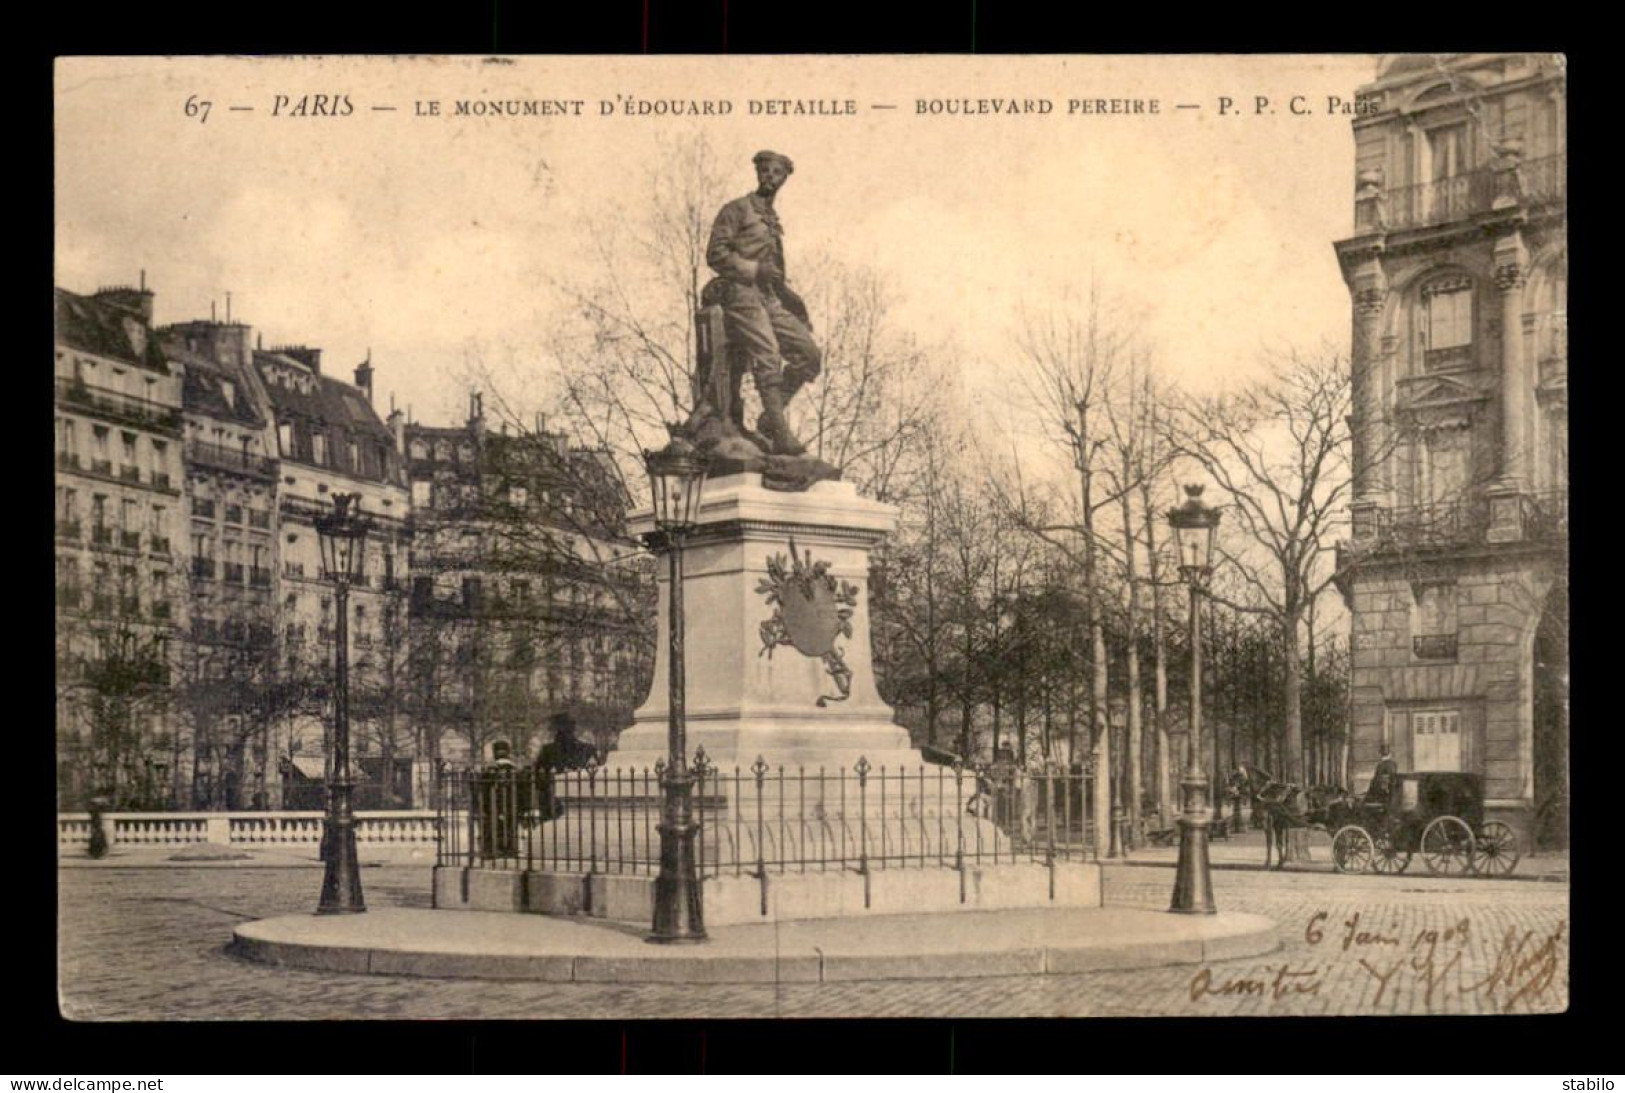 75 - PARIS 17EME - BOULEVARD PEIRERE, STATUE D'EDOUARD DETAILLE, DETRUITE - Paris (17)